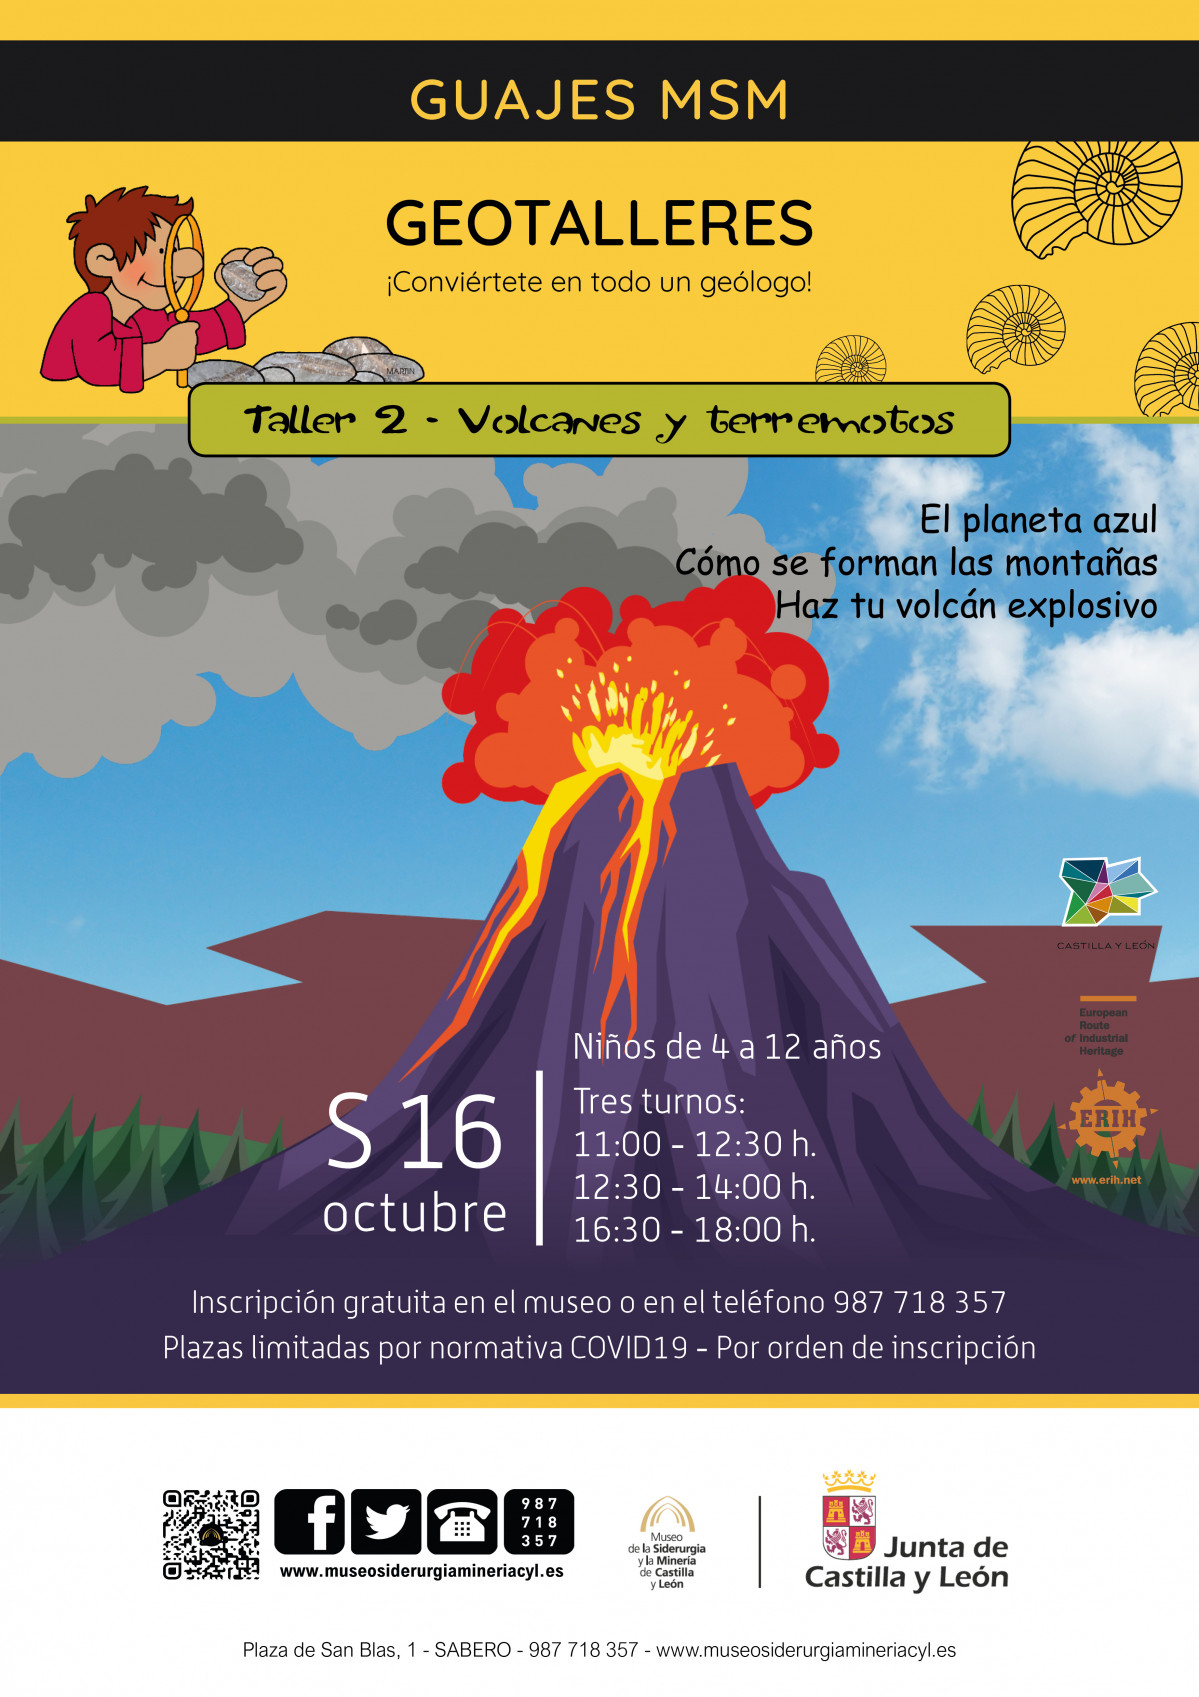 Geotalleres   Volcanes y terremotos